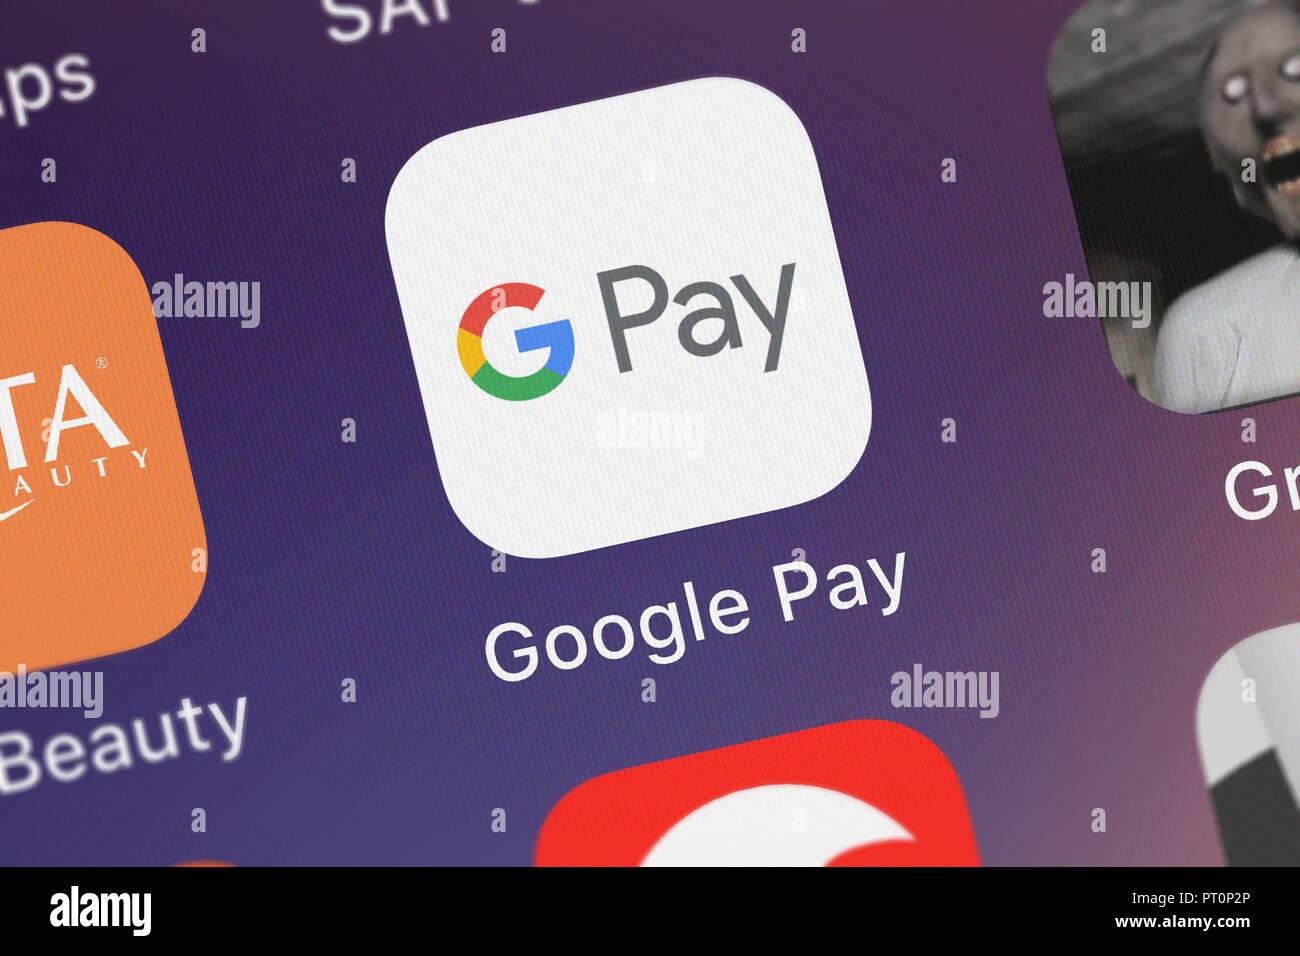 Pay. Гугл pay. Google pay платежная система. Гугл Пэй иконка приложения. Логотип GPAY.